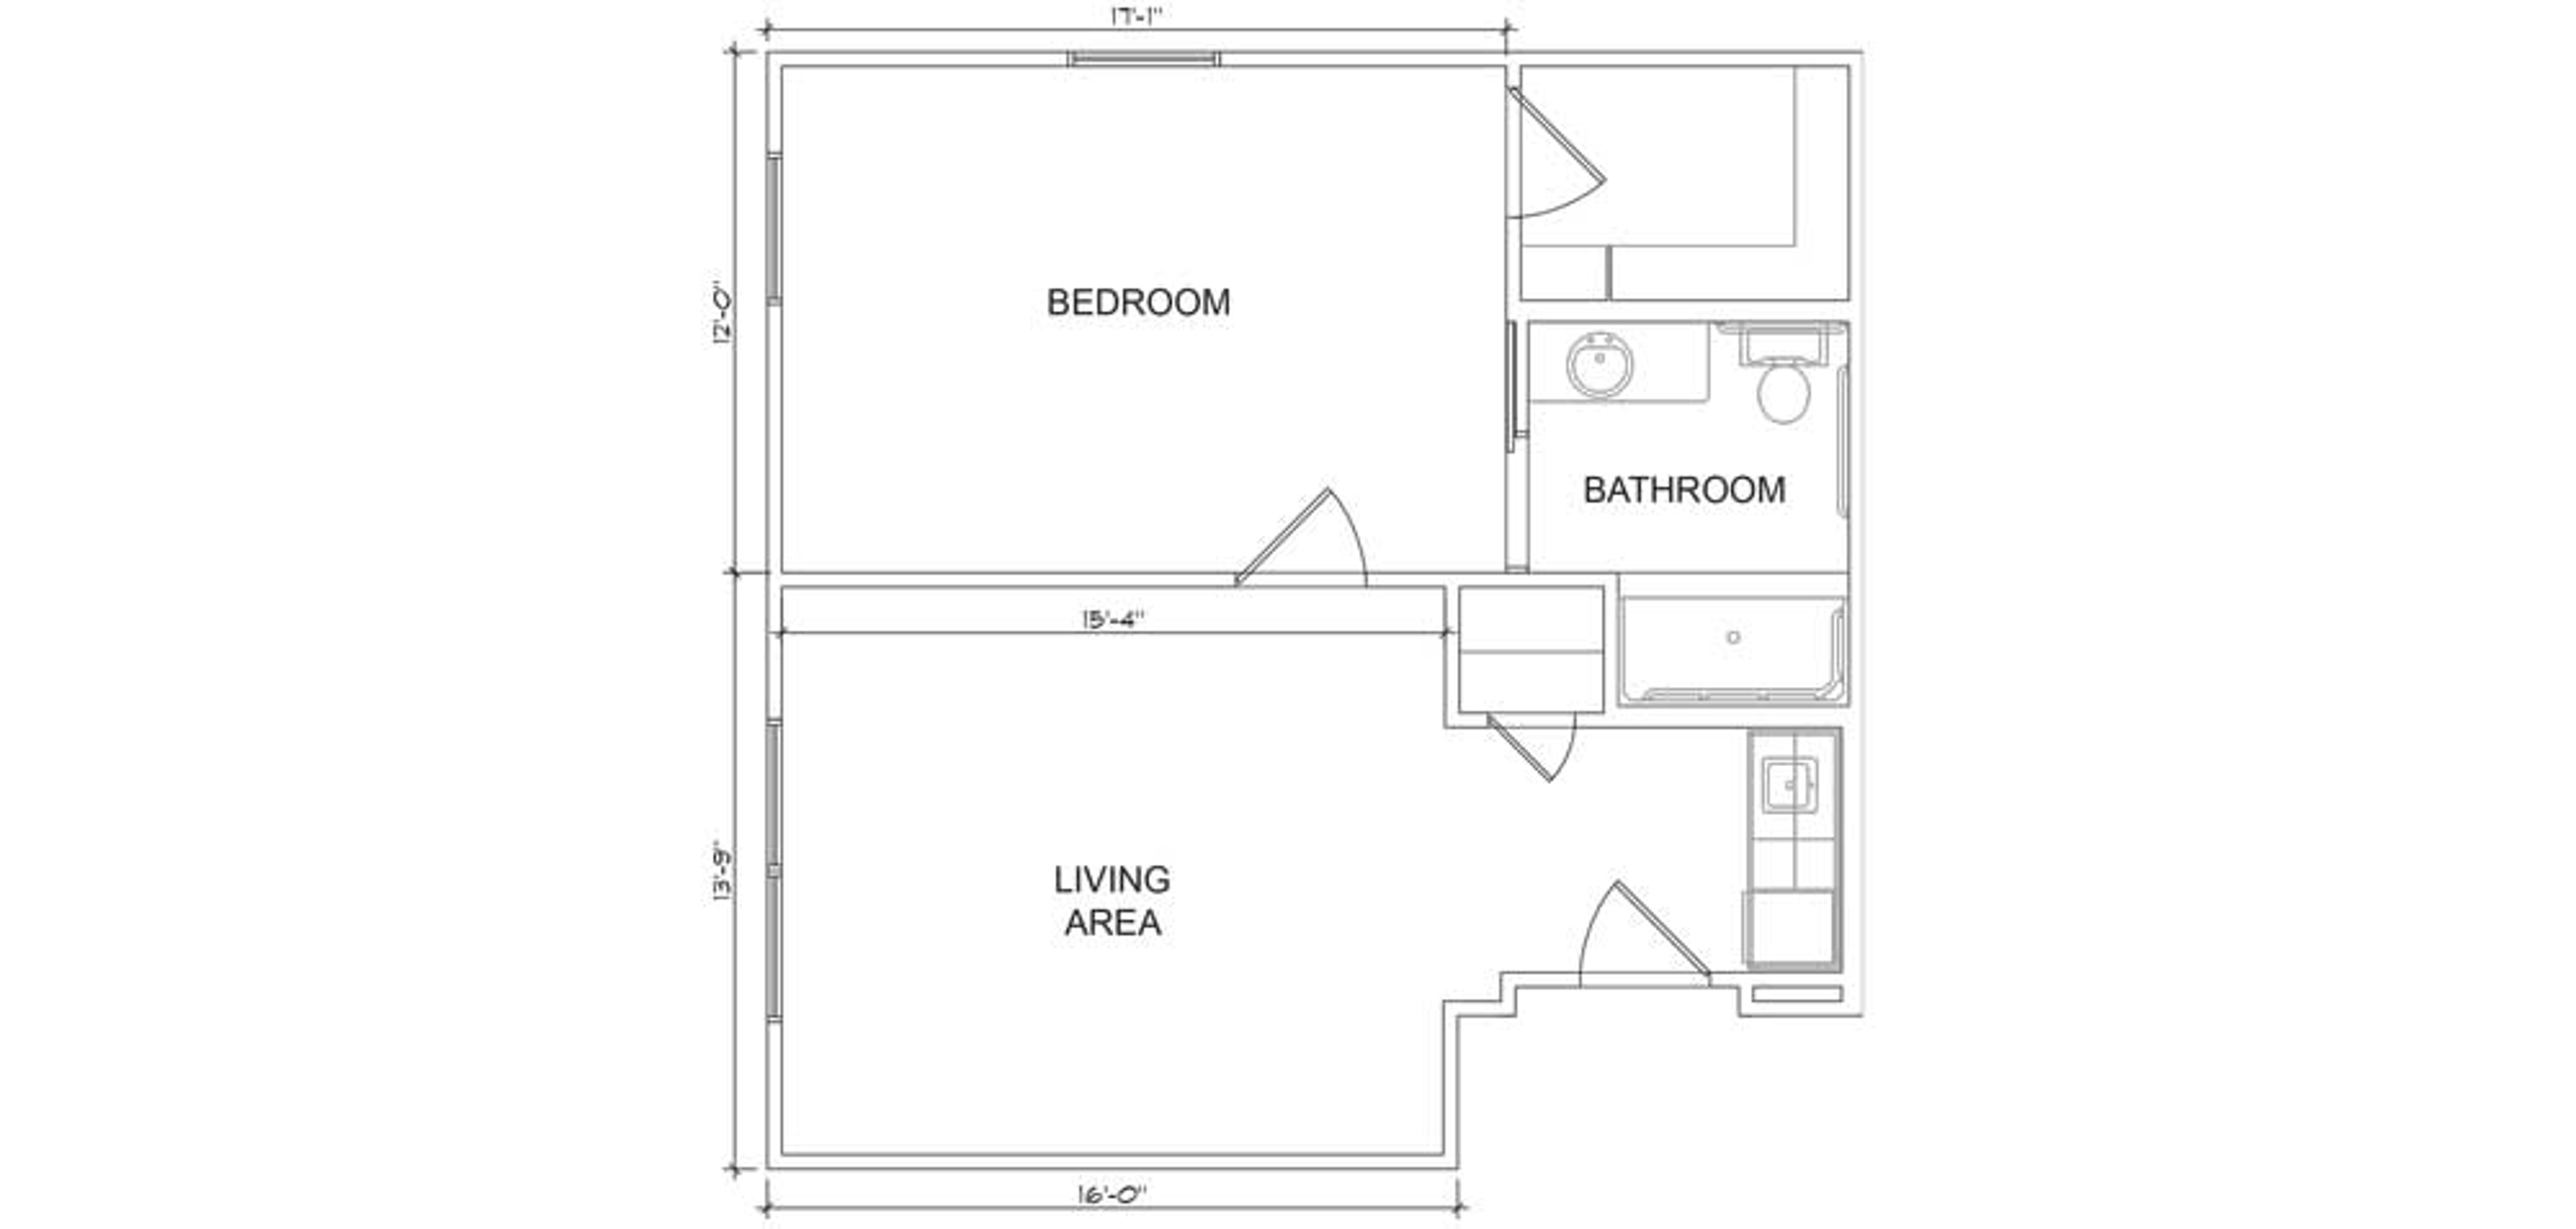 Floorplan - Heritage Oaks - 1B 1B Luxury Assisted Living